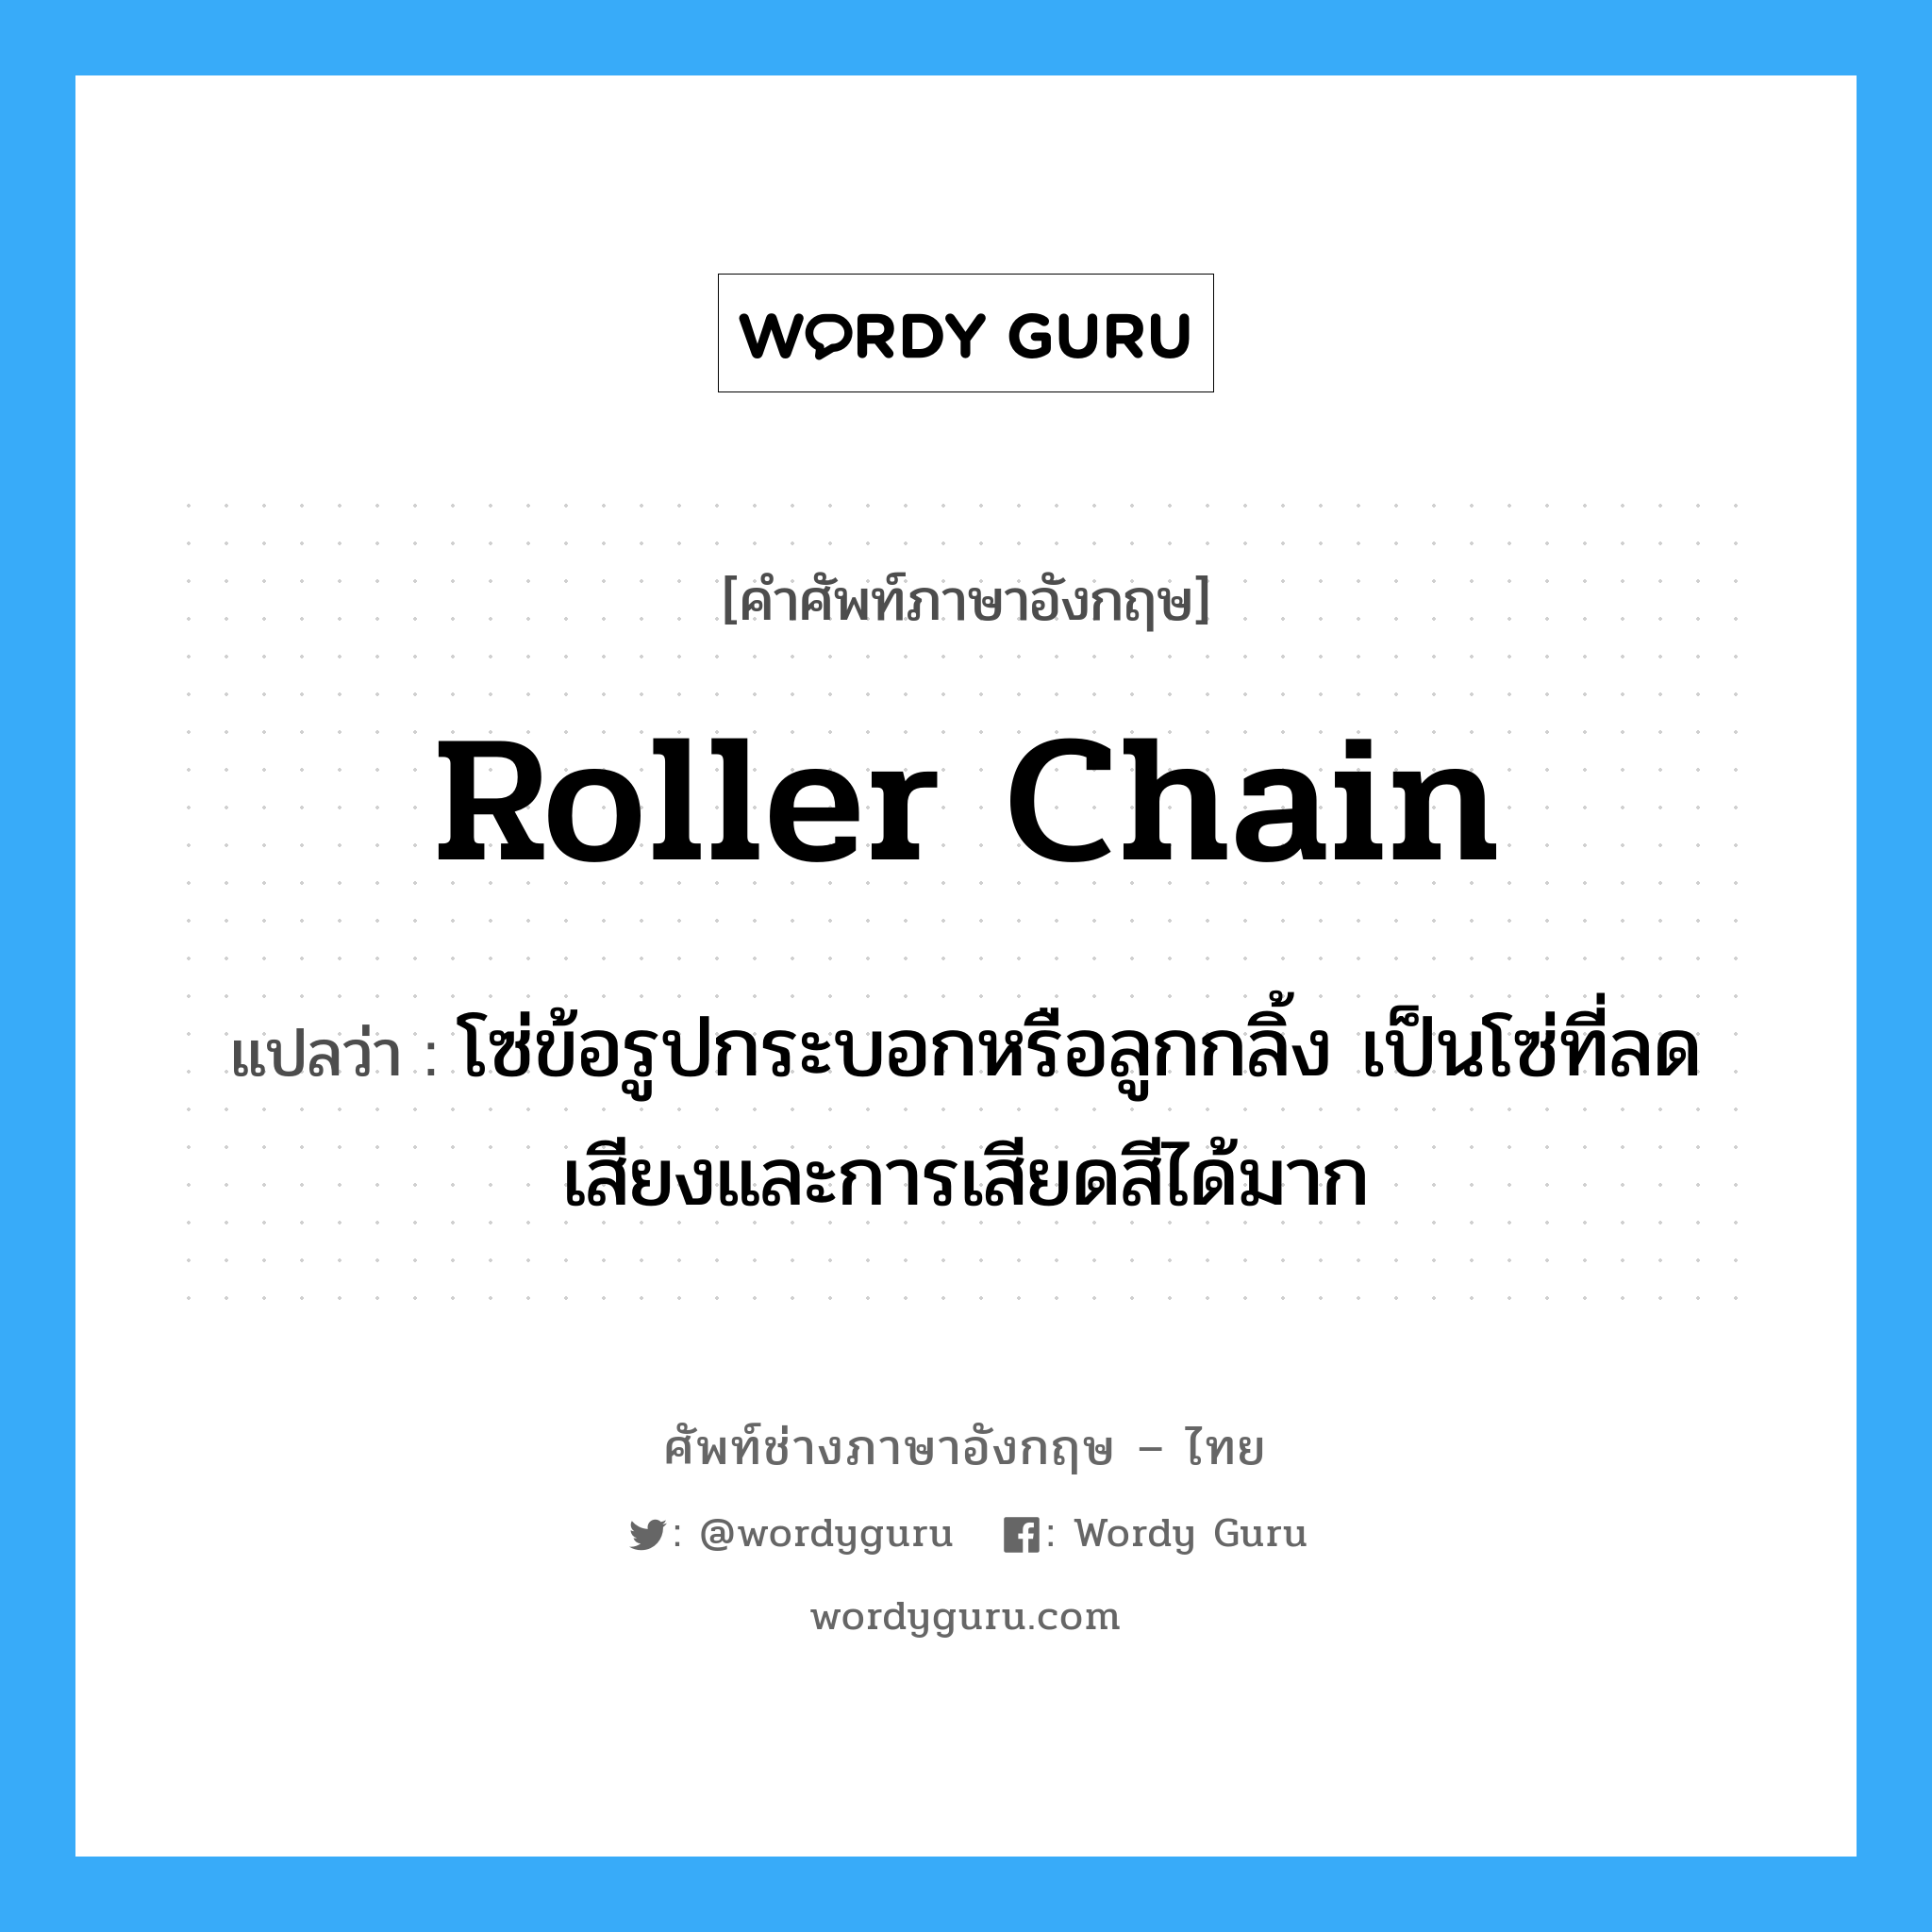 roller chain แปลว่า?, คำศัพท์ช่างภาษาอังกฤษ - ไทย roller chain คำศัพท์ภาษาอังกฤษ roller chain แปลว่า โซ่ข้อรูปกระบอกหรือลูกกลิ้ง เป็นโซ่ที่ลดเสียงและการเสียดสีได้มาก